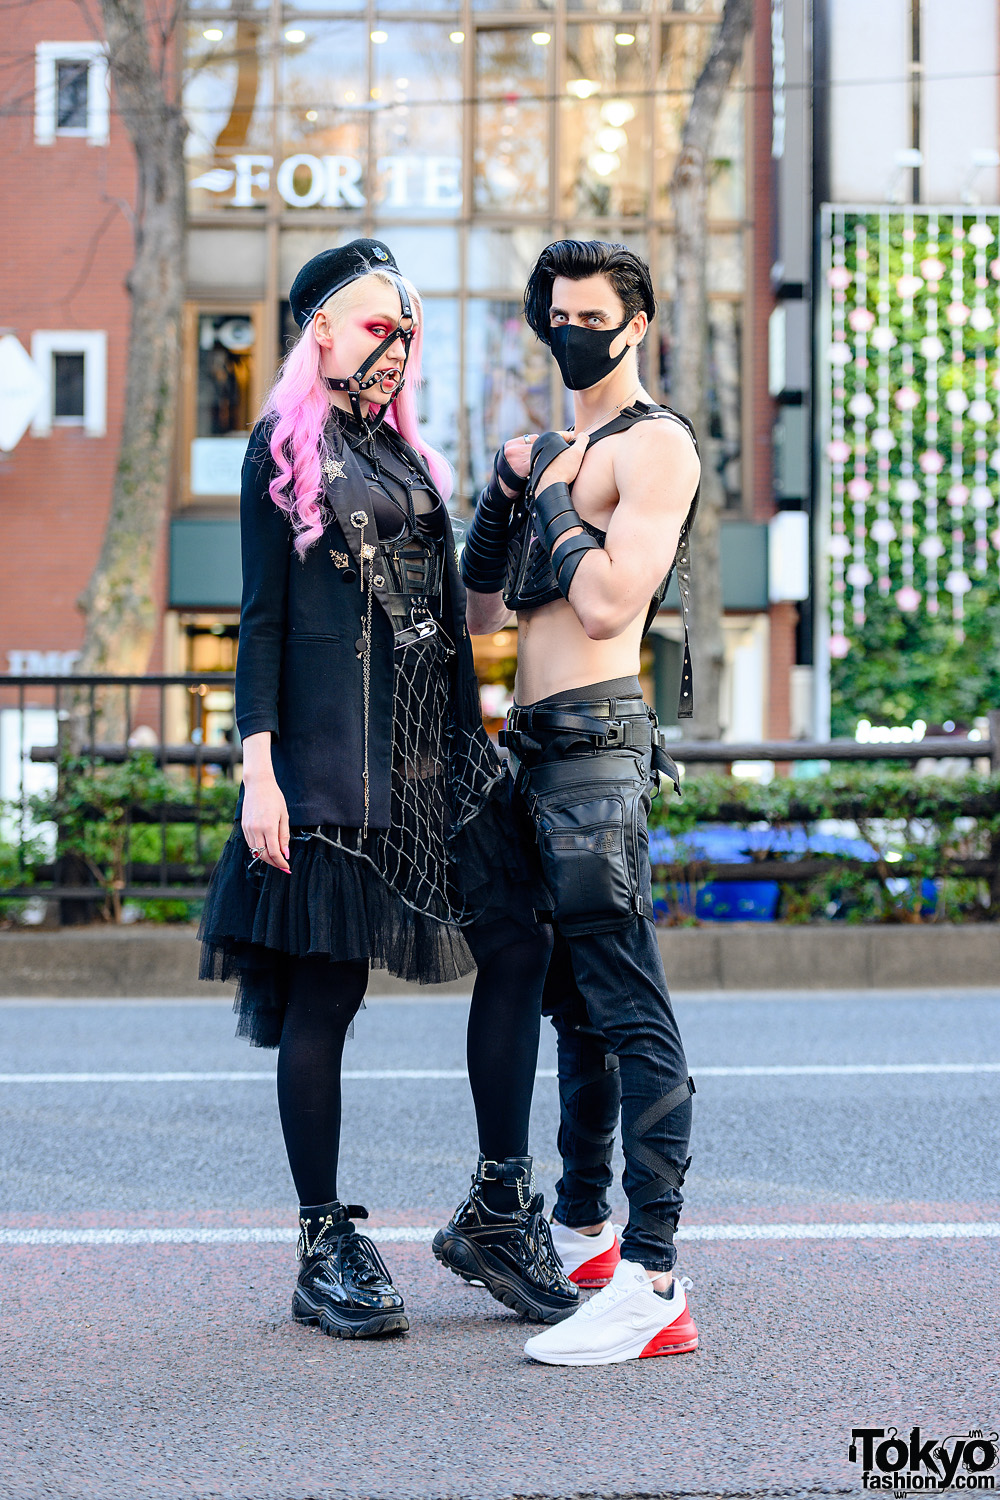 Tokyo Cyberpunk Streetwear Styles w/ Pink Hair, Killstar Harness, URB Top, Honey Birdette Lingerie Dress, POI Designs Vest & Nike Sneakers